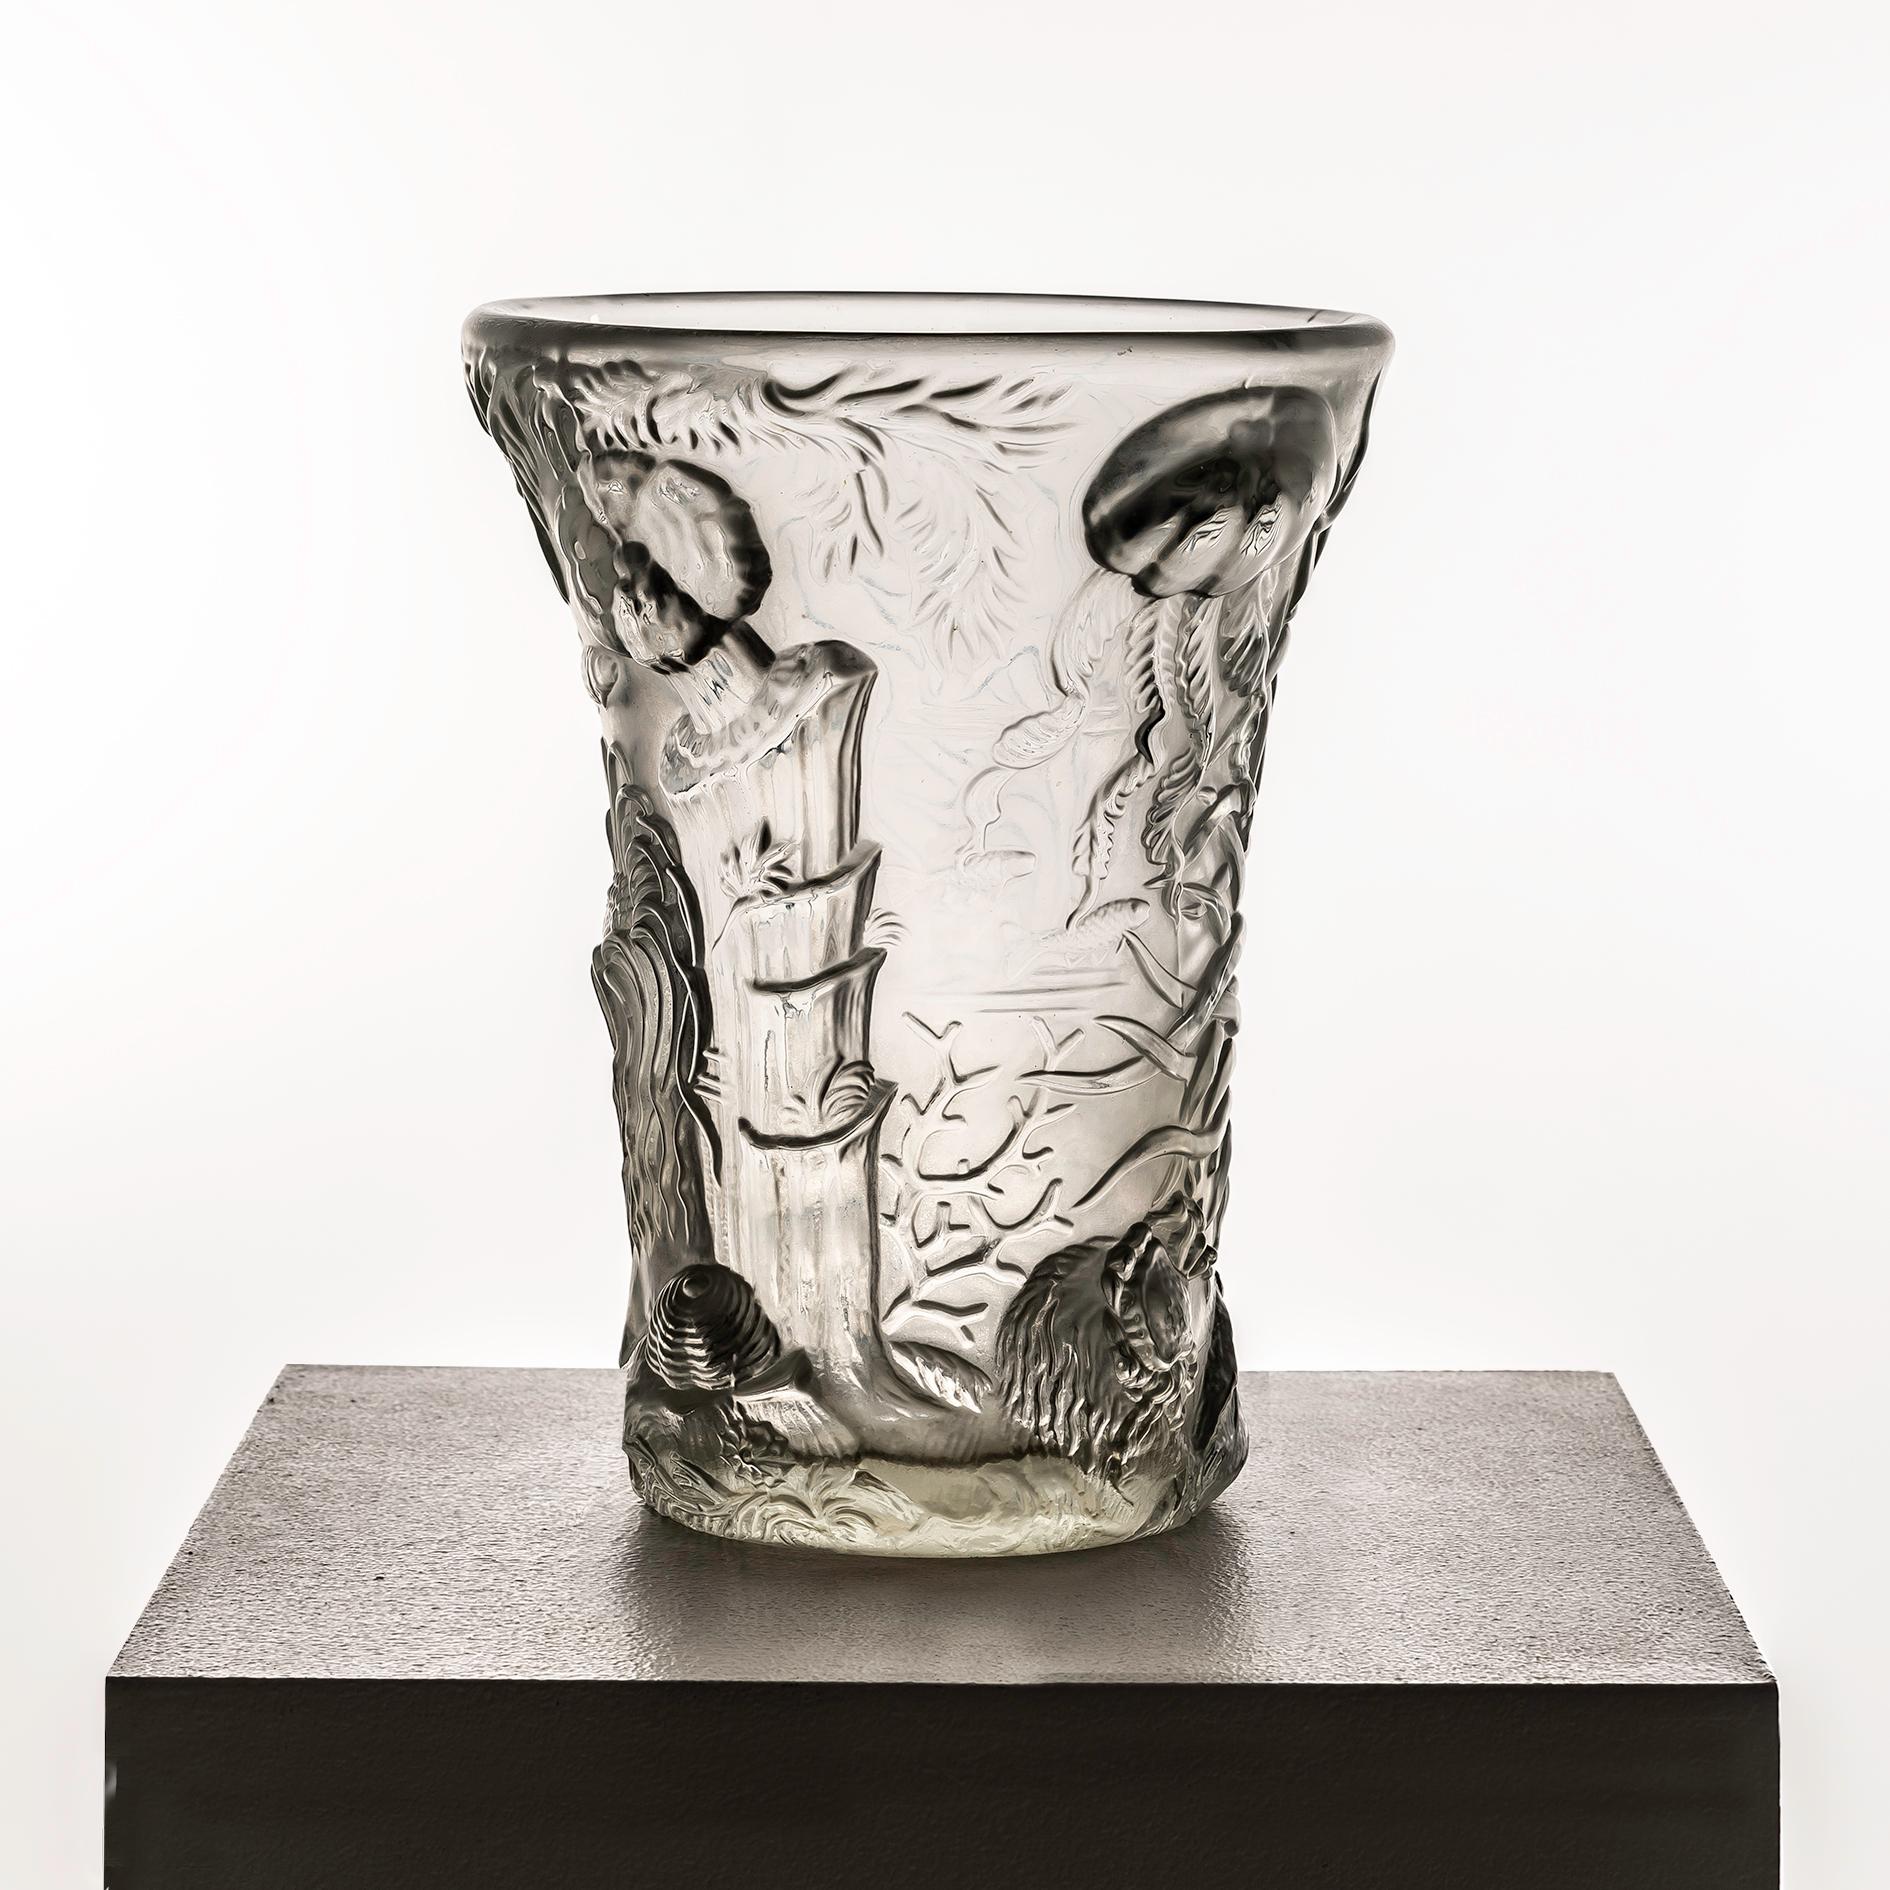 Die in den 1960er Jahren von Josef Inwald für Barolac geschaffene Glasvase Marine Life ist ein Zeugnis für die exquisite Handwerkskunst und die künstlerische Innovation, die die Glaswaren der Jahrhundertmitte prägten. Dieses besondere Stück wird für